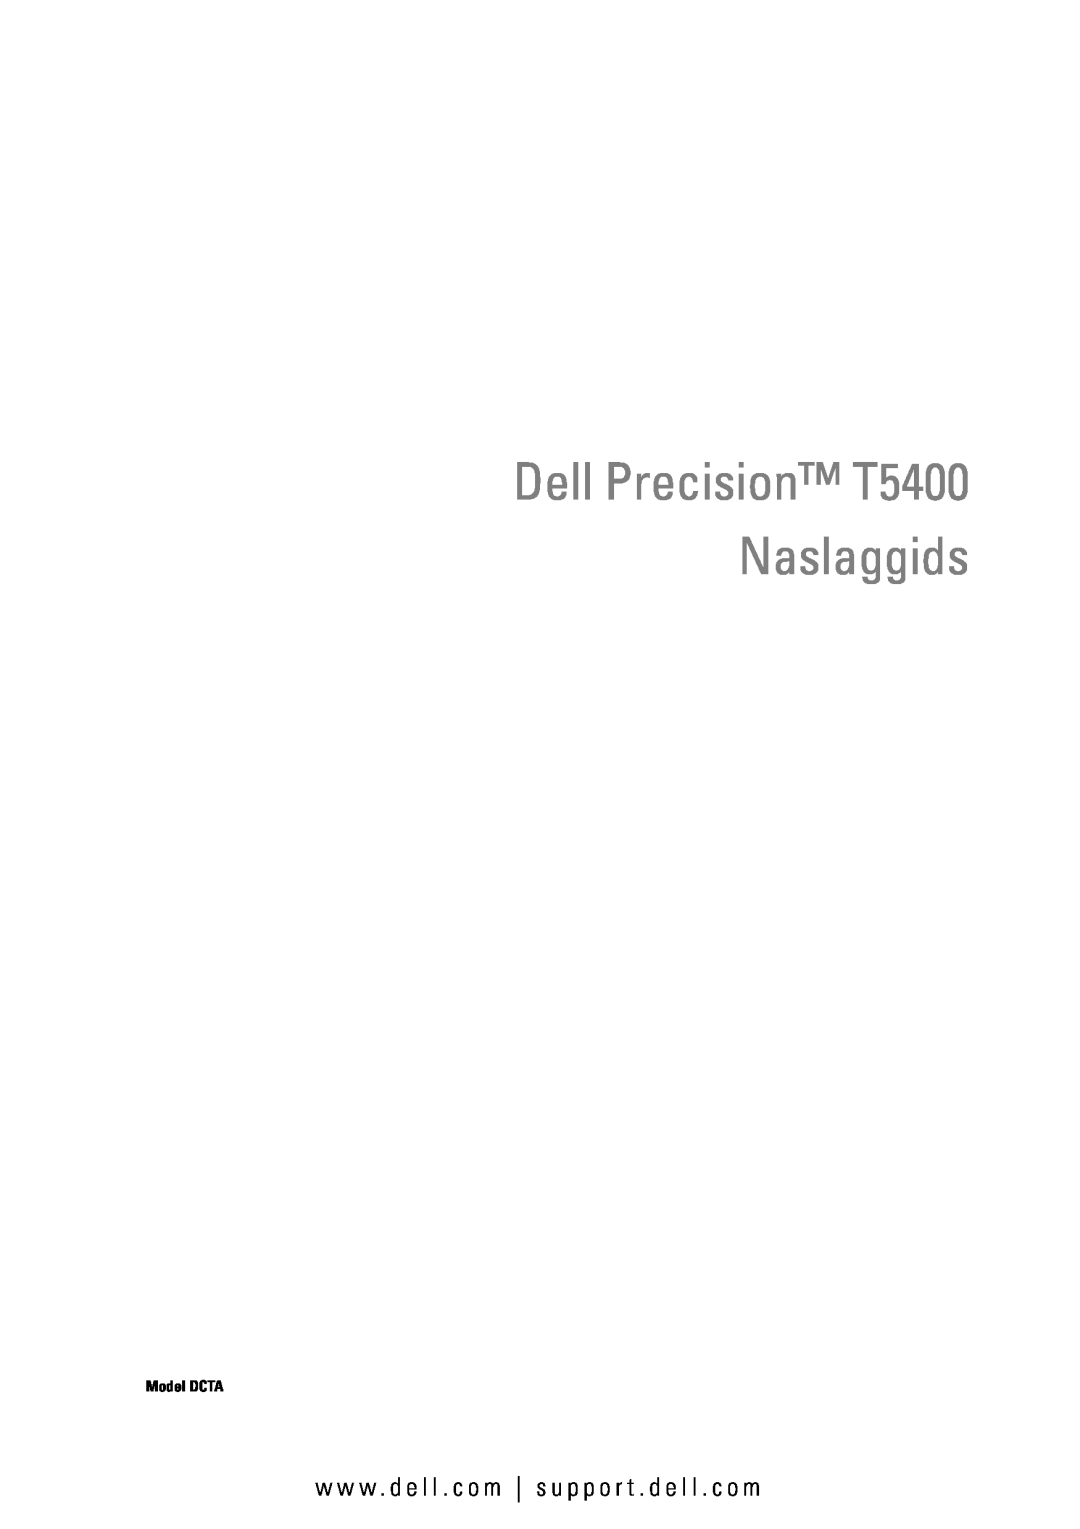 Dell manual Dell Precision T5400 Naslaggids, w w w . d e l l . c o m s u p p o r t . d e l l . c o m 